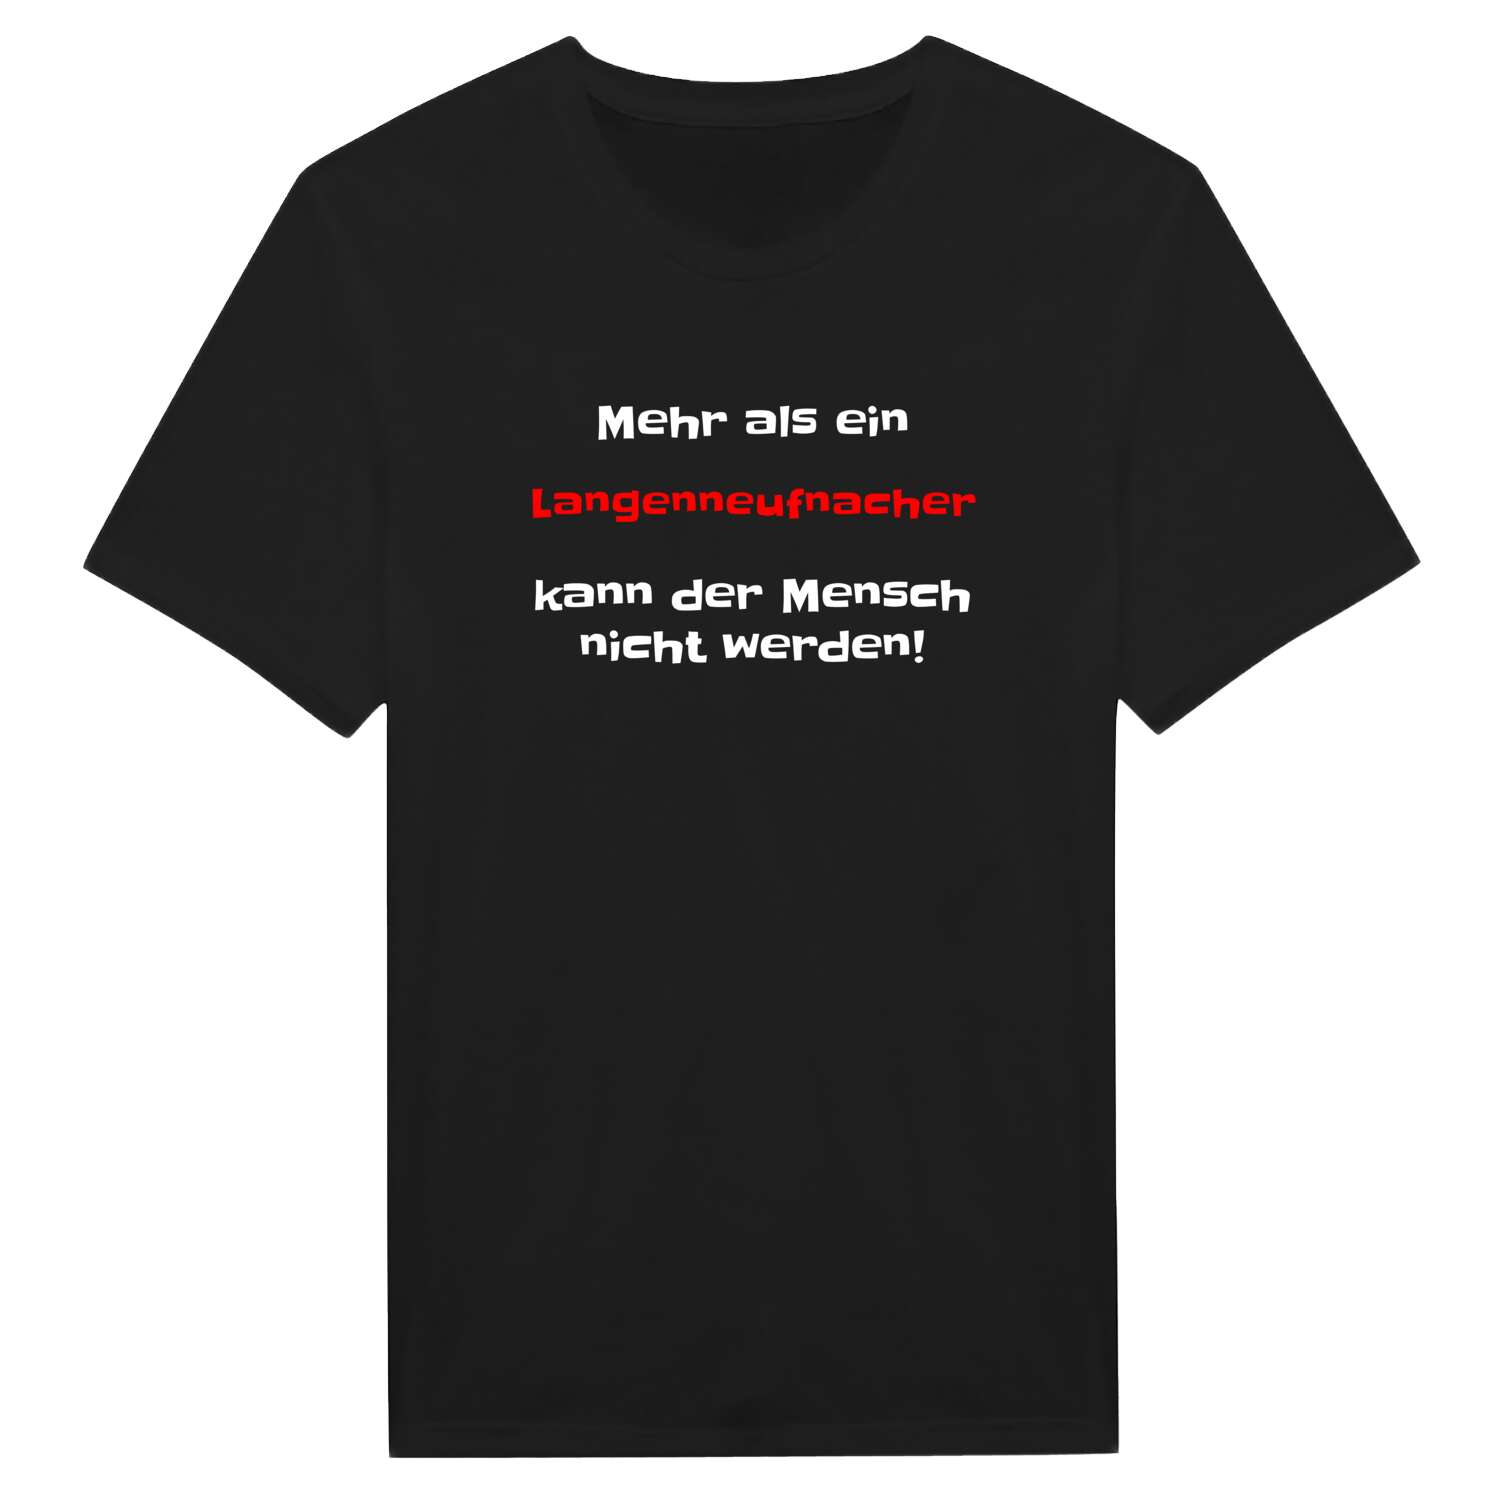 Langenneufnach T-Shirt »Mehr als ein«